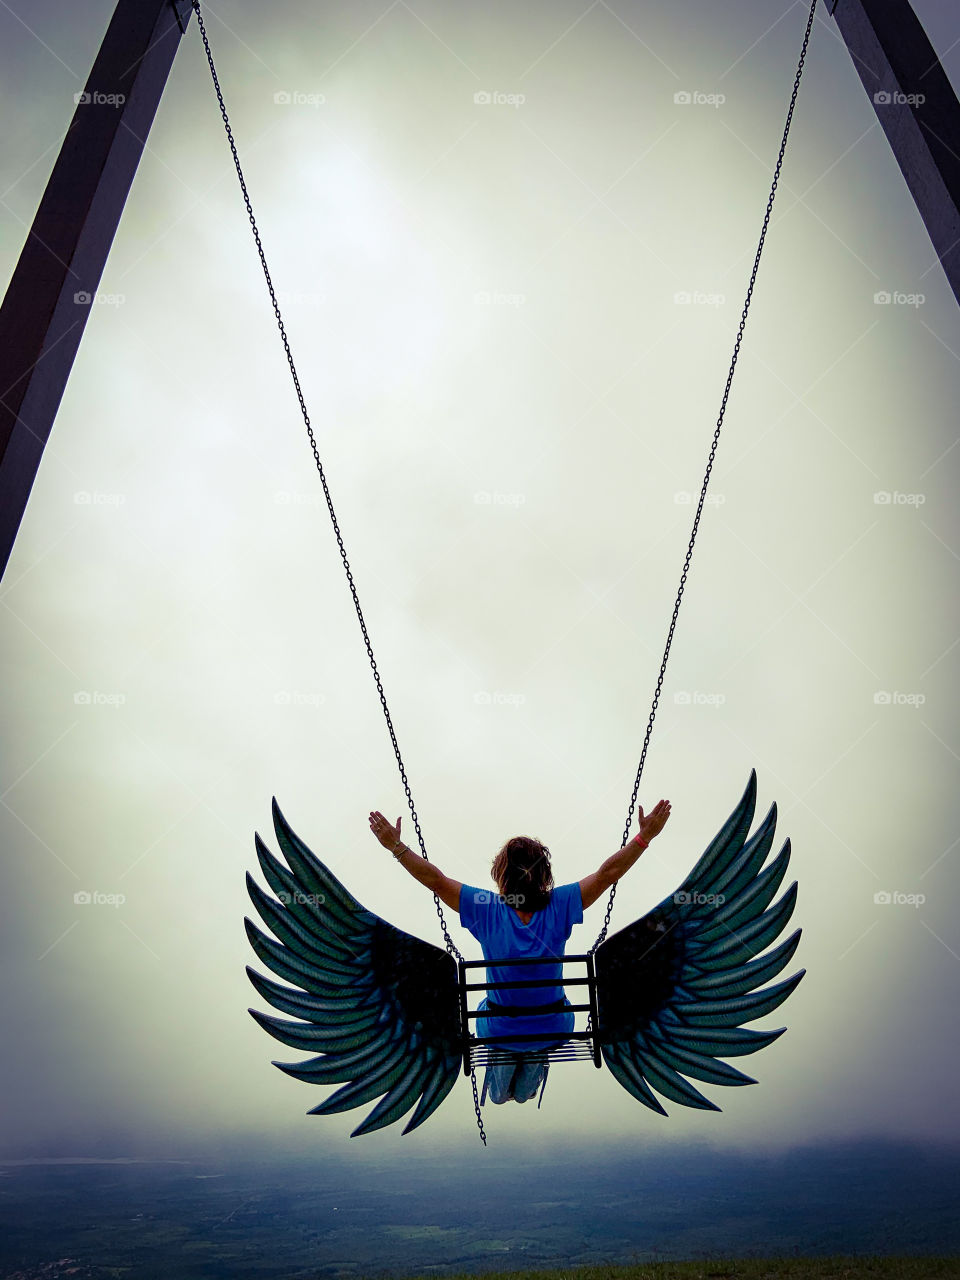 Fly like an angel